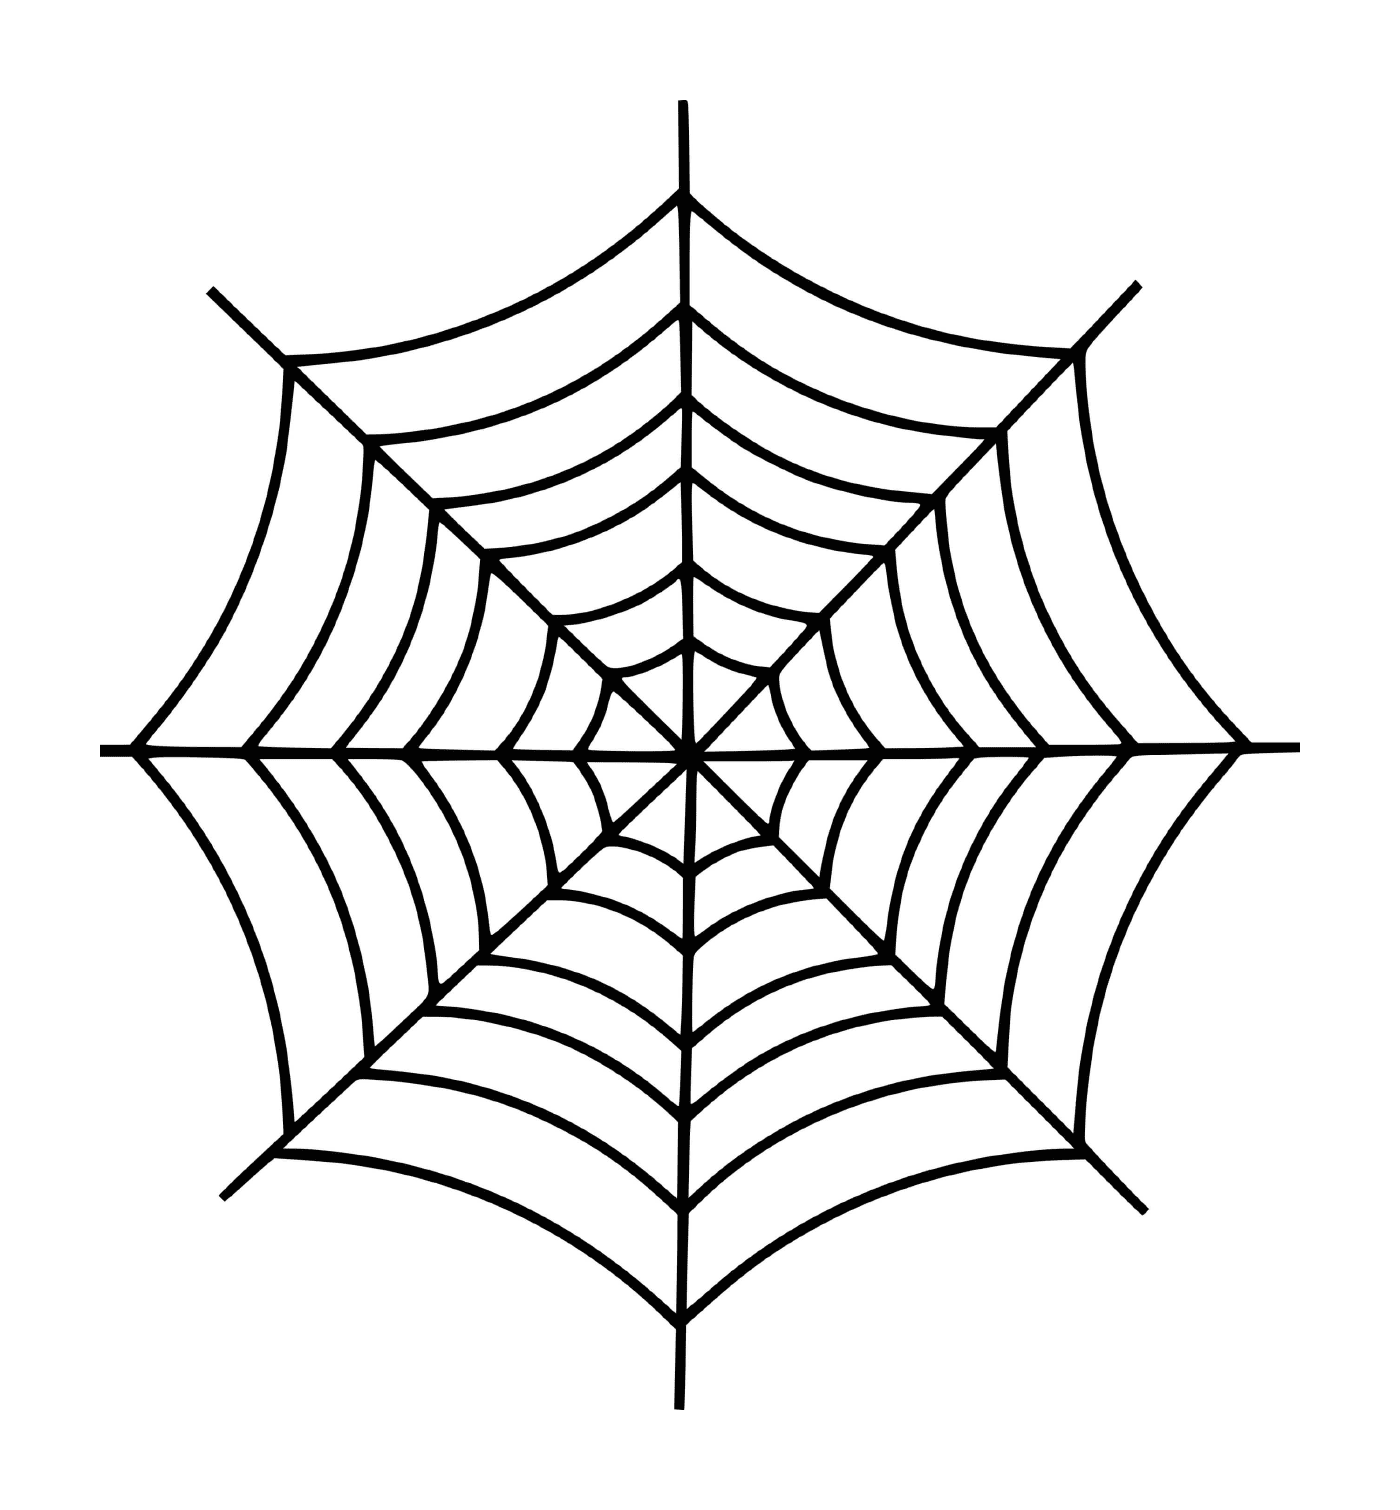  Ein einfaches Spinnennetz 